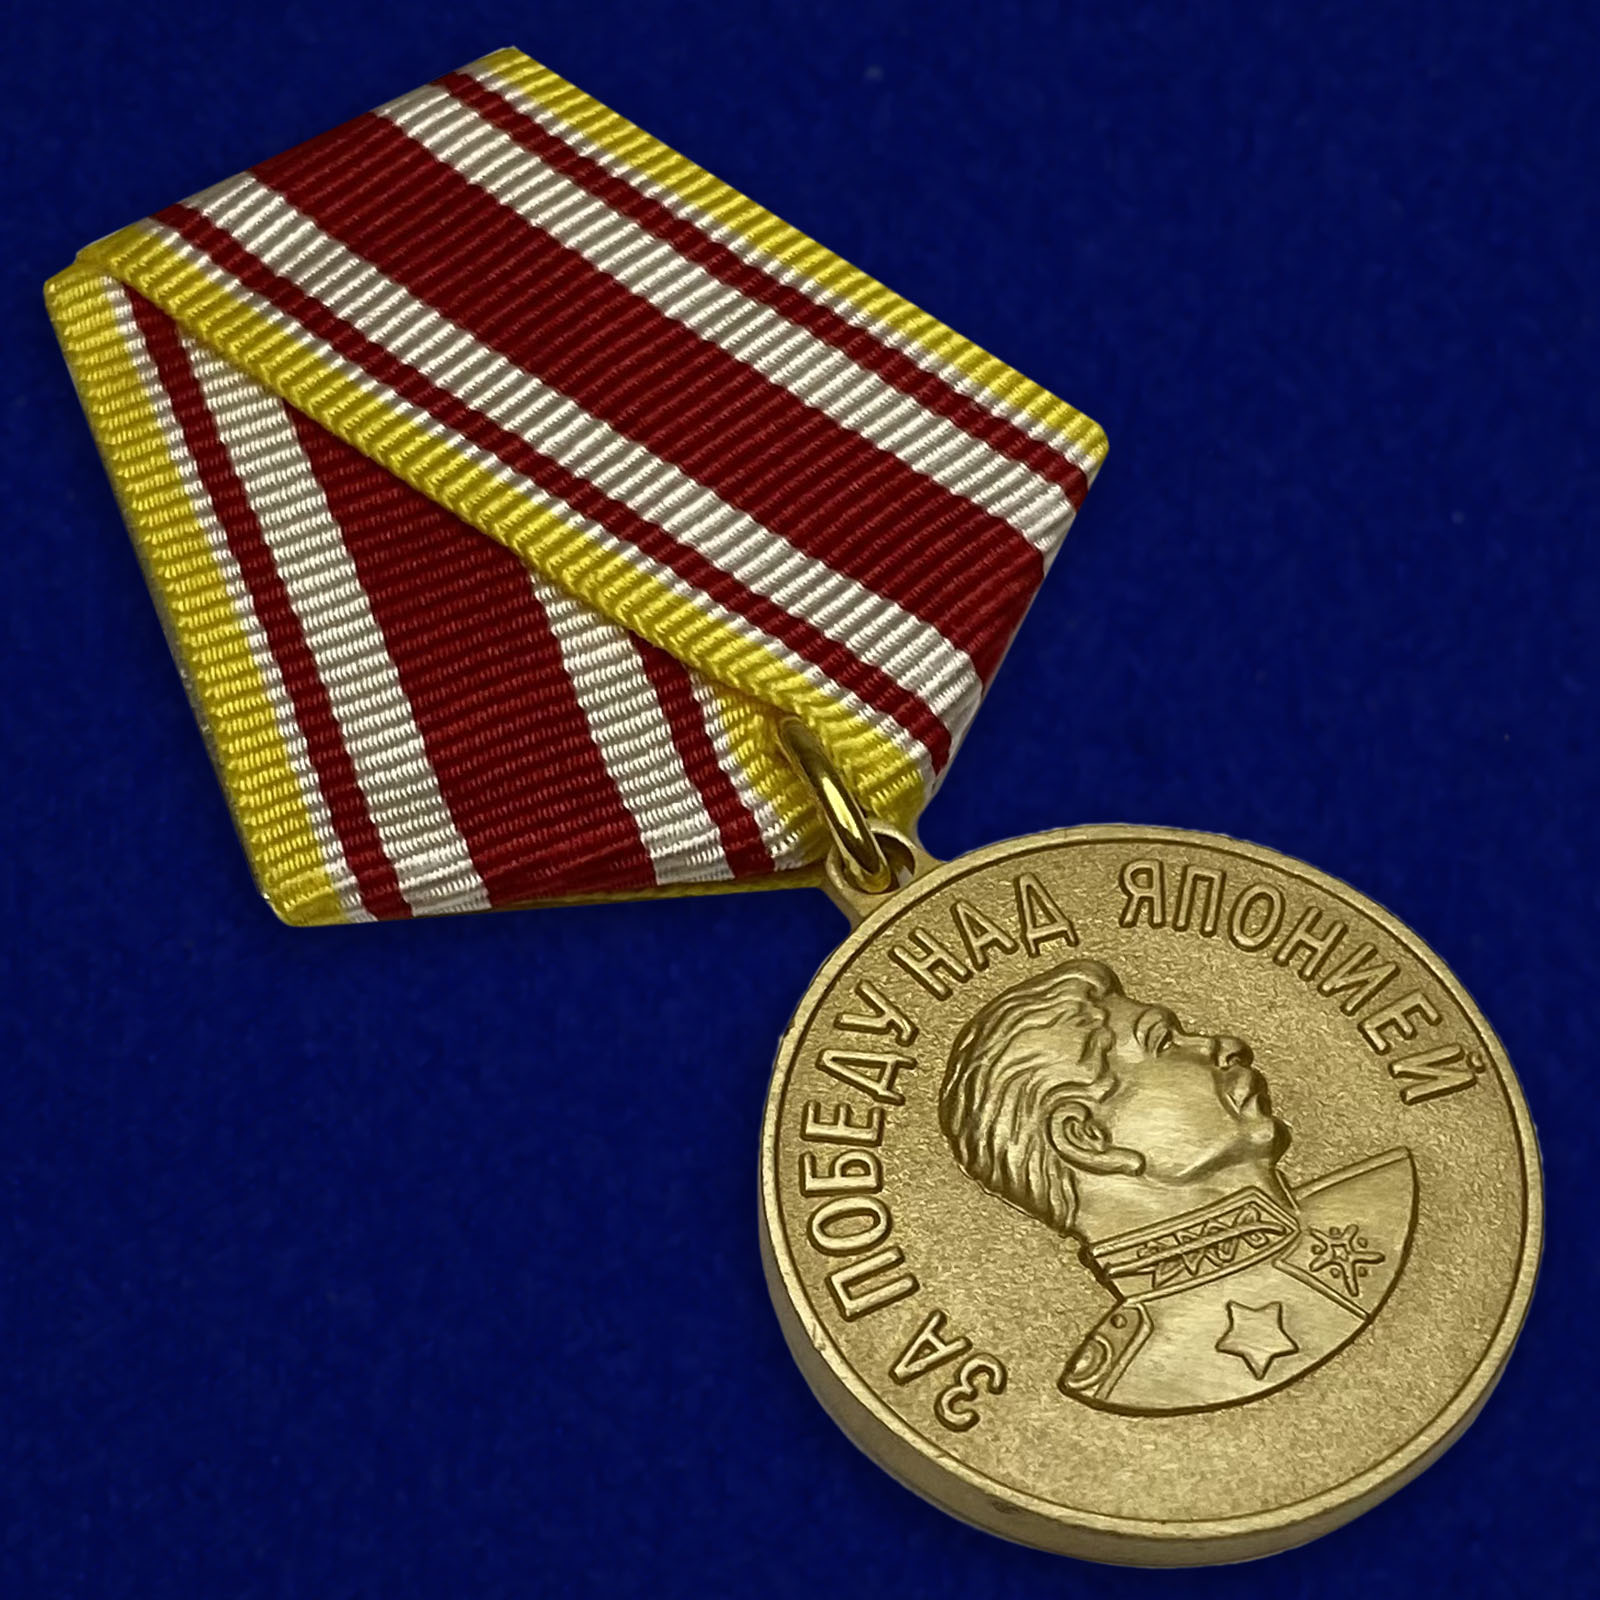 Аверс медали "За Победу над Японией" с изображением И.В. Сталина